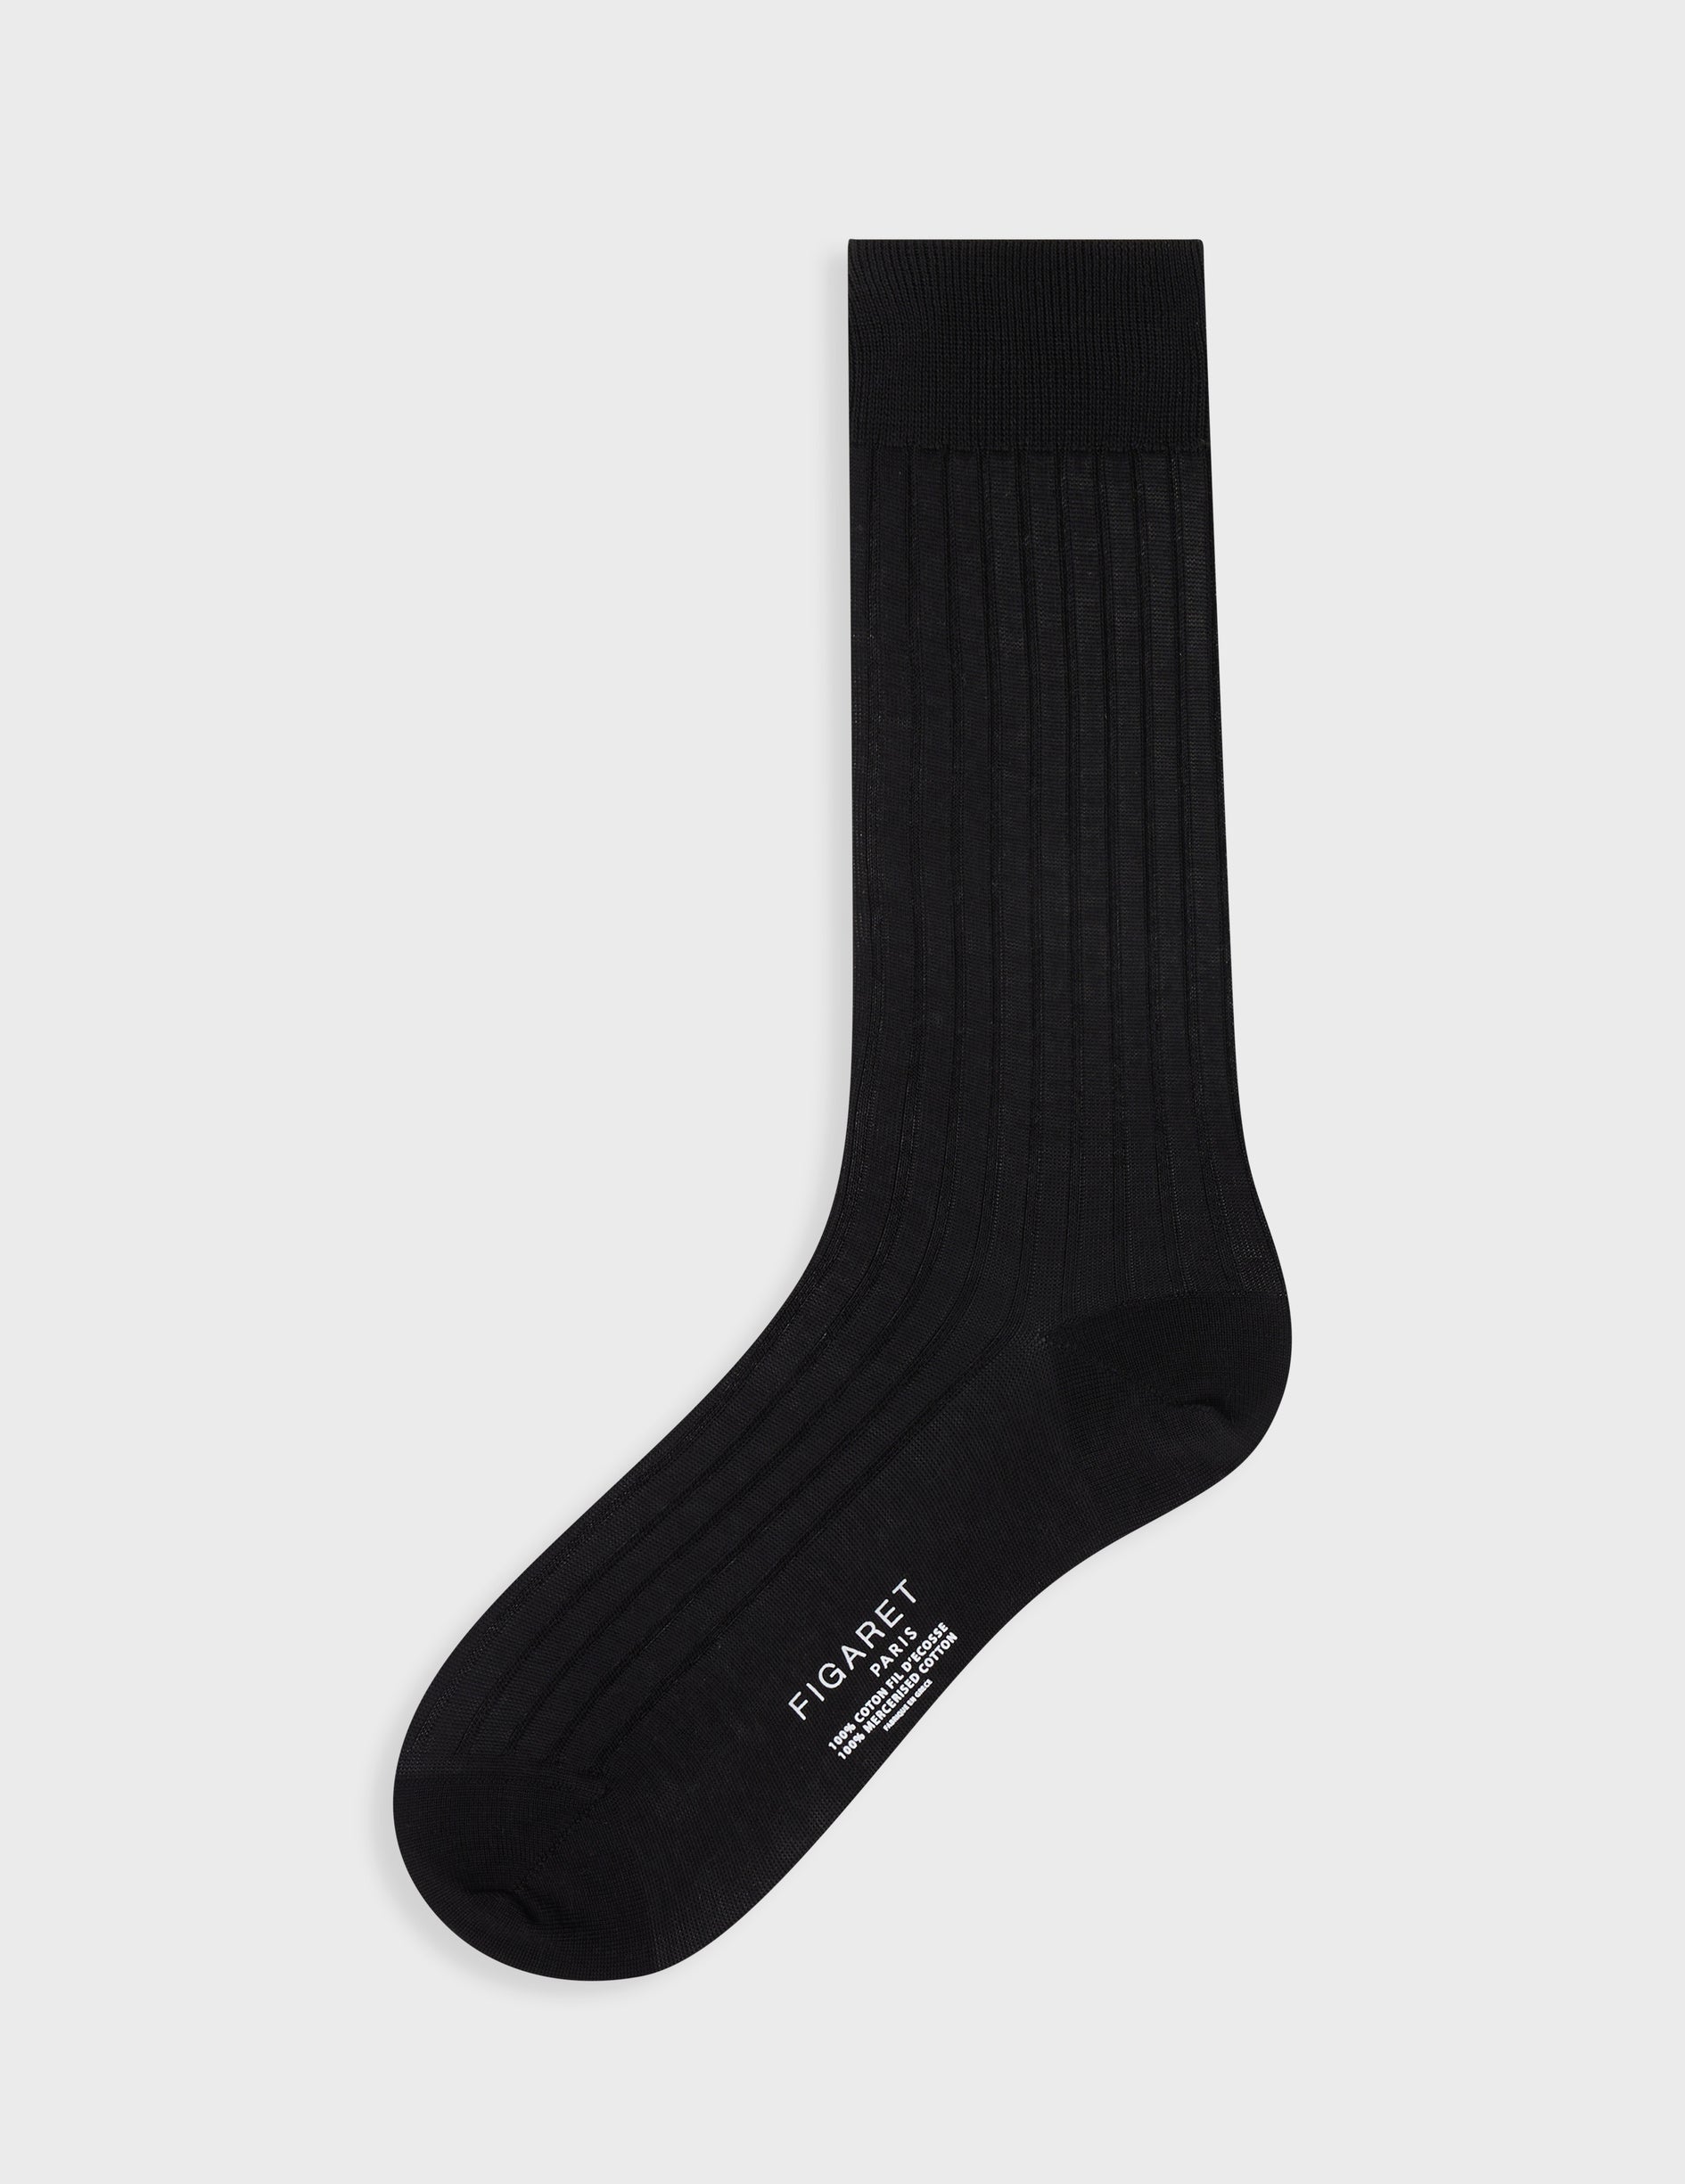 Black double lisle thread socks